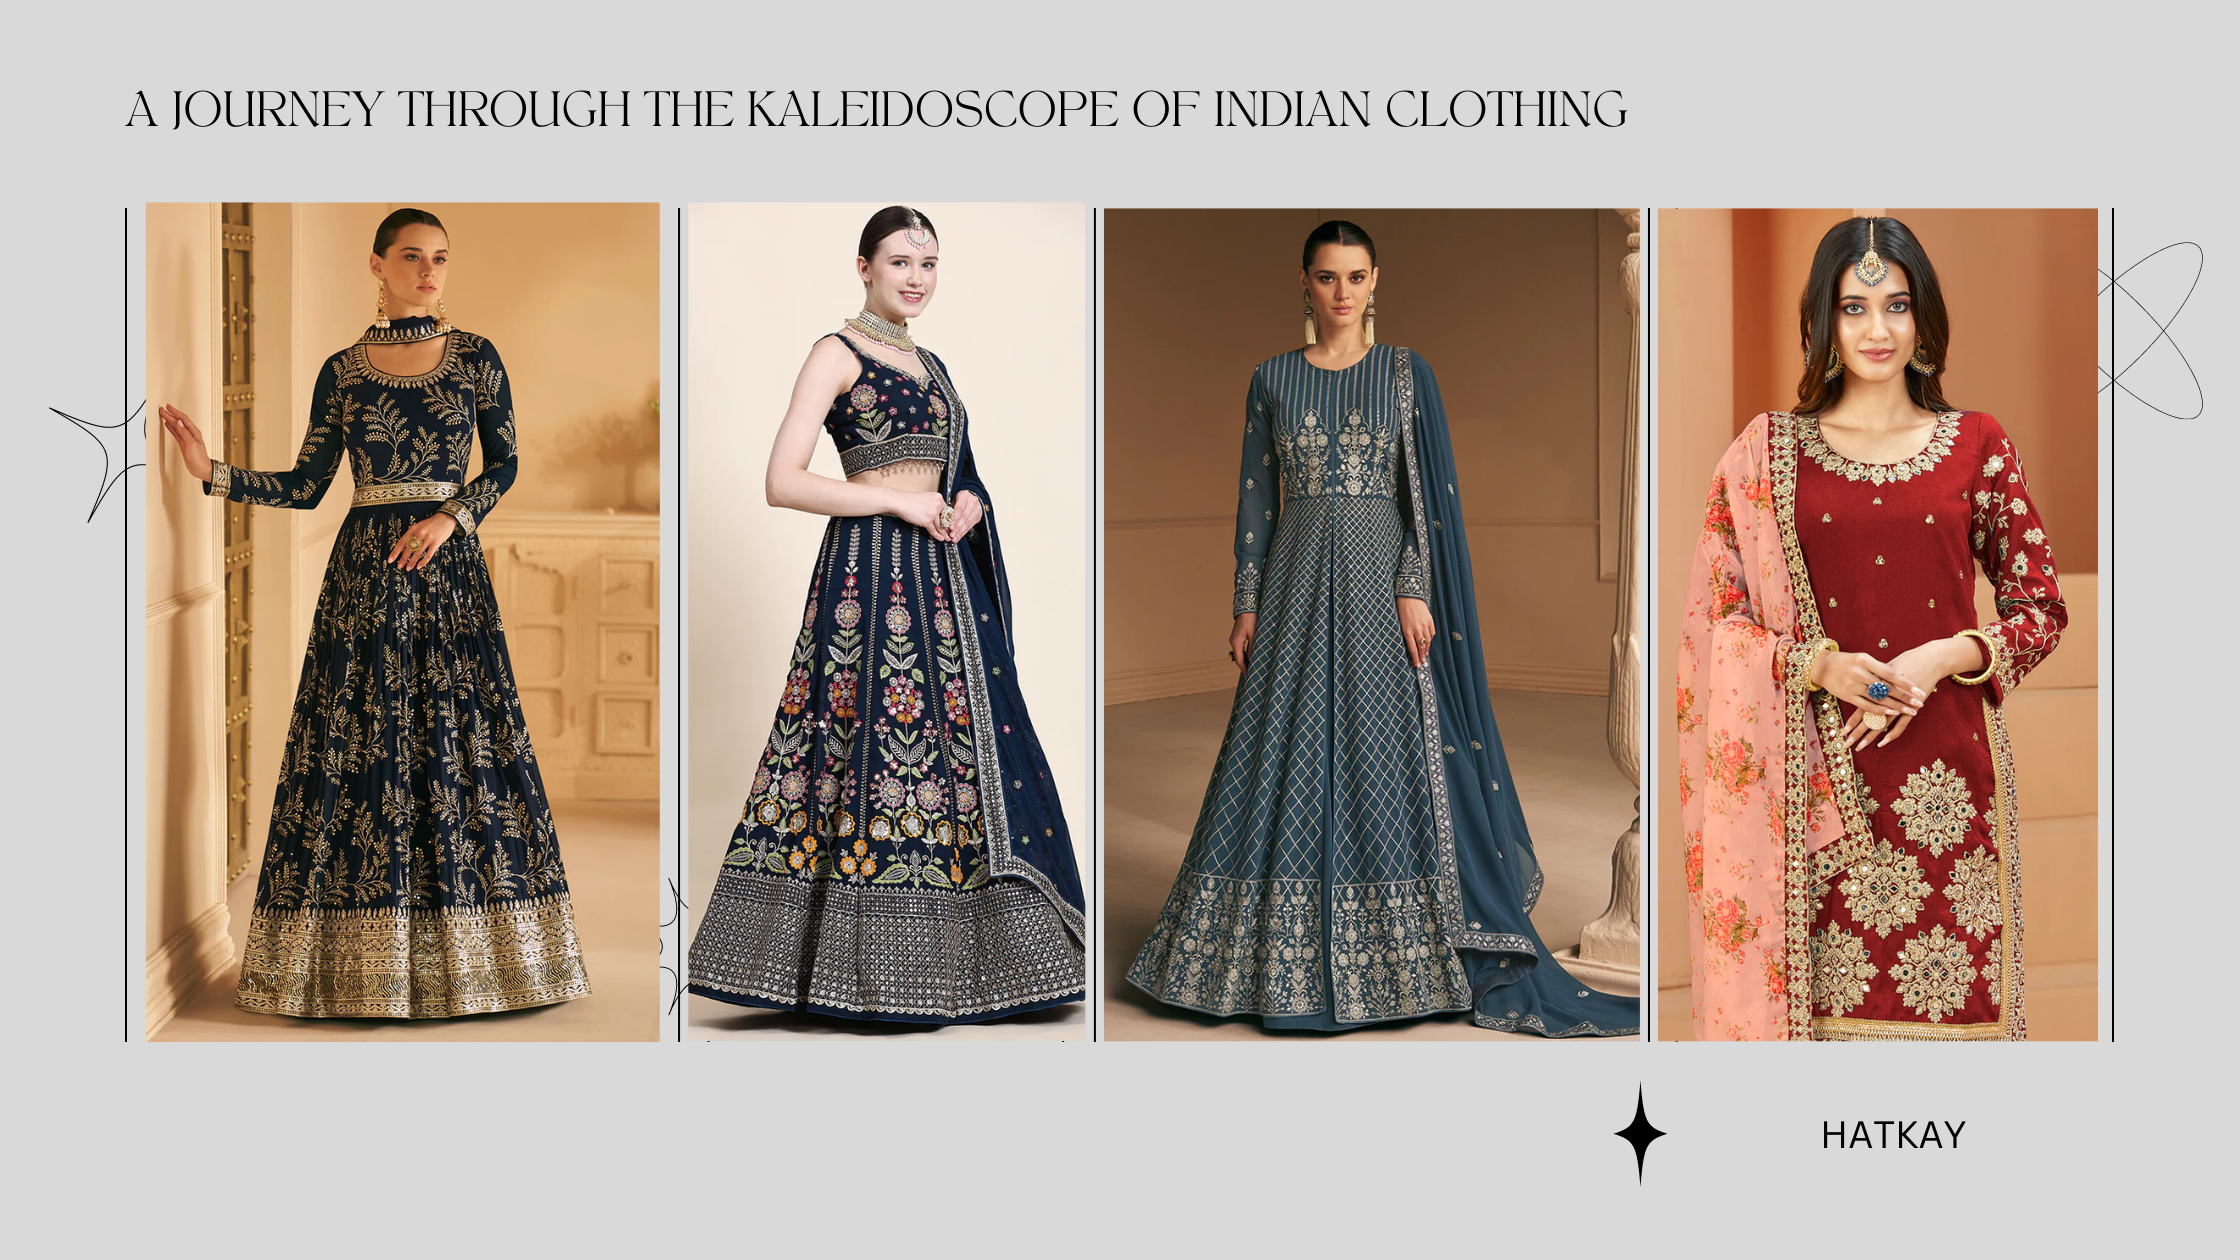 A Journey Through the Kaleidoscope of Indian Clothing: Exploring Salwar Kameez, Lehenga Choli, Anarkali Suits, Punjabi Suits, and Indian Sarees